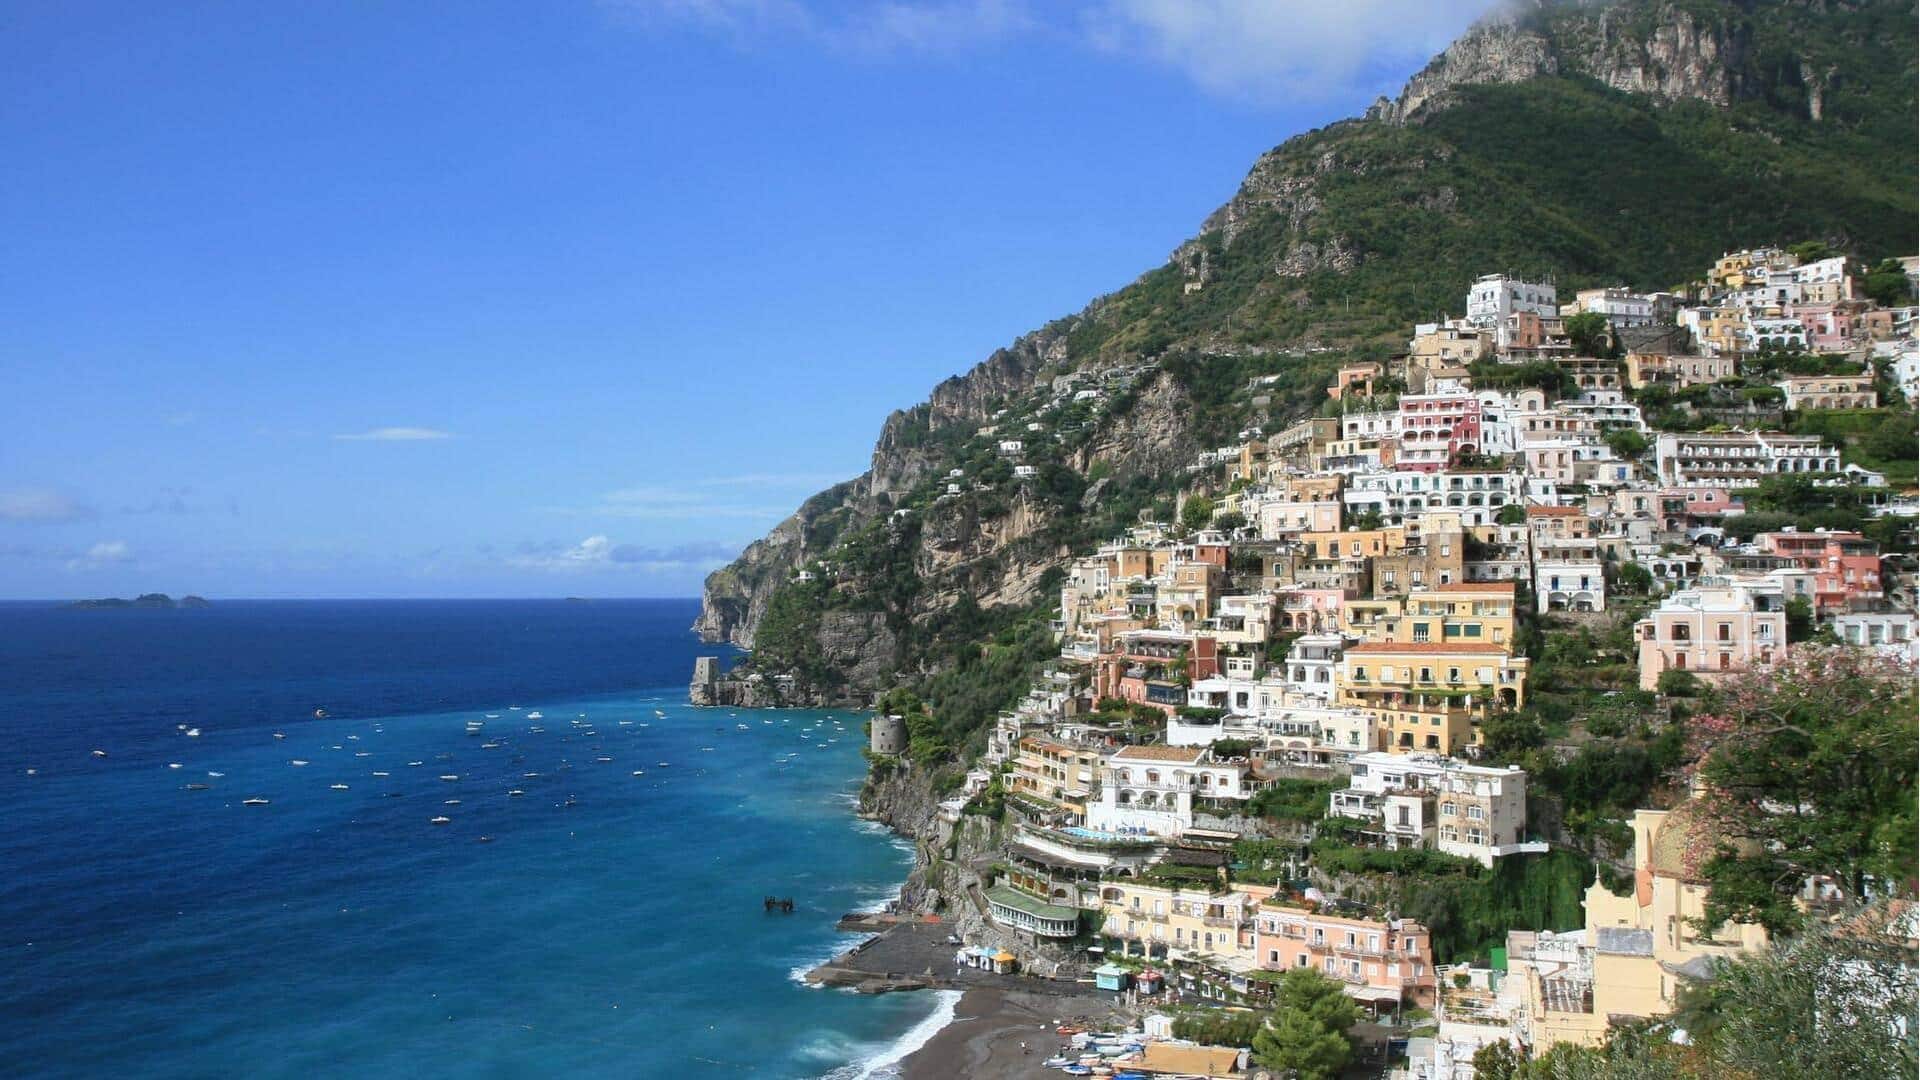 Perjalanan ke Ravello, Italia: Retret Pantai Amalfi yang tenang